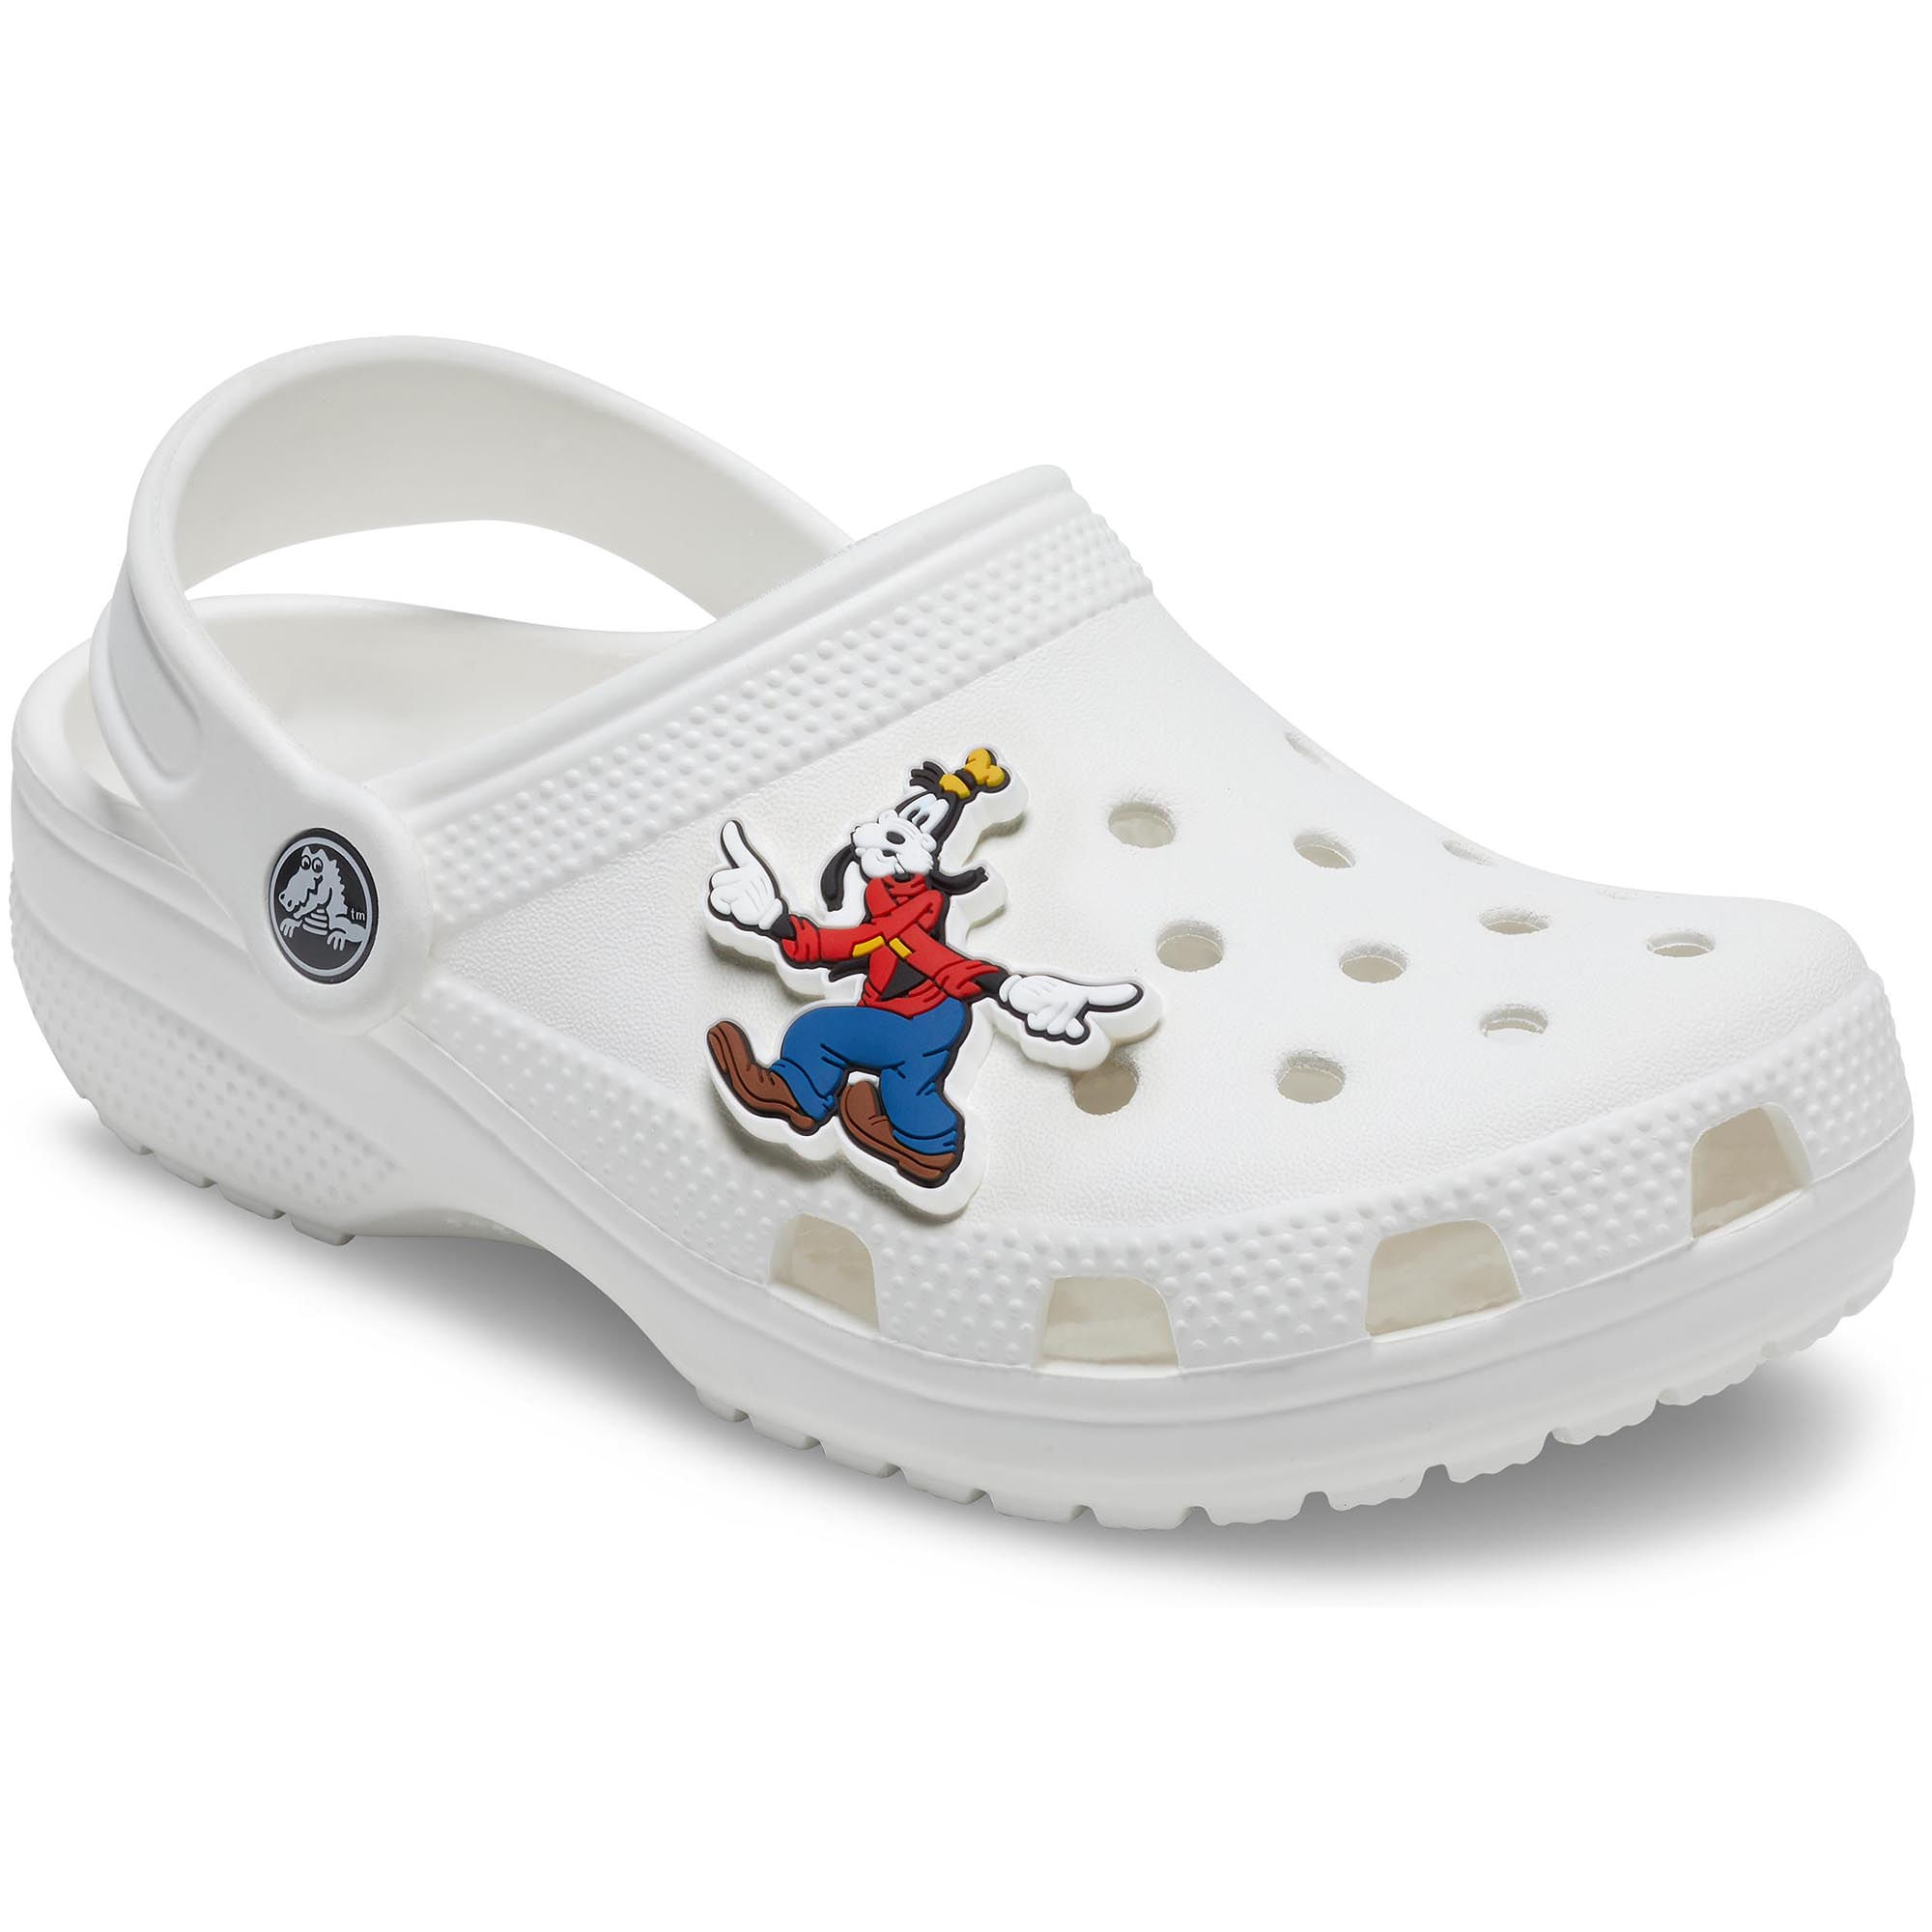 Jibbitz™ Disney Goofy Character | CROCS - Crocs